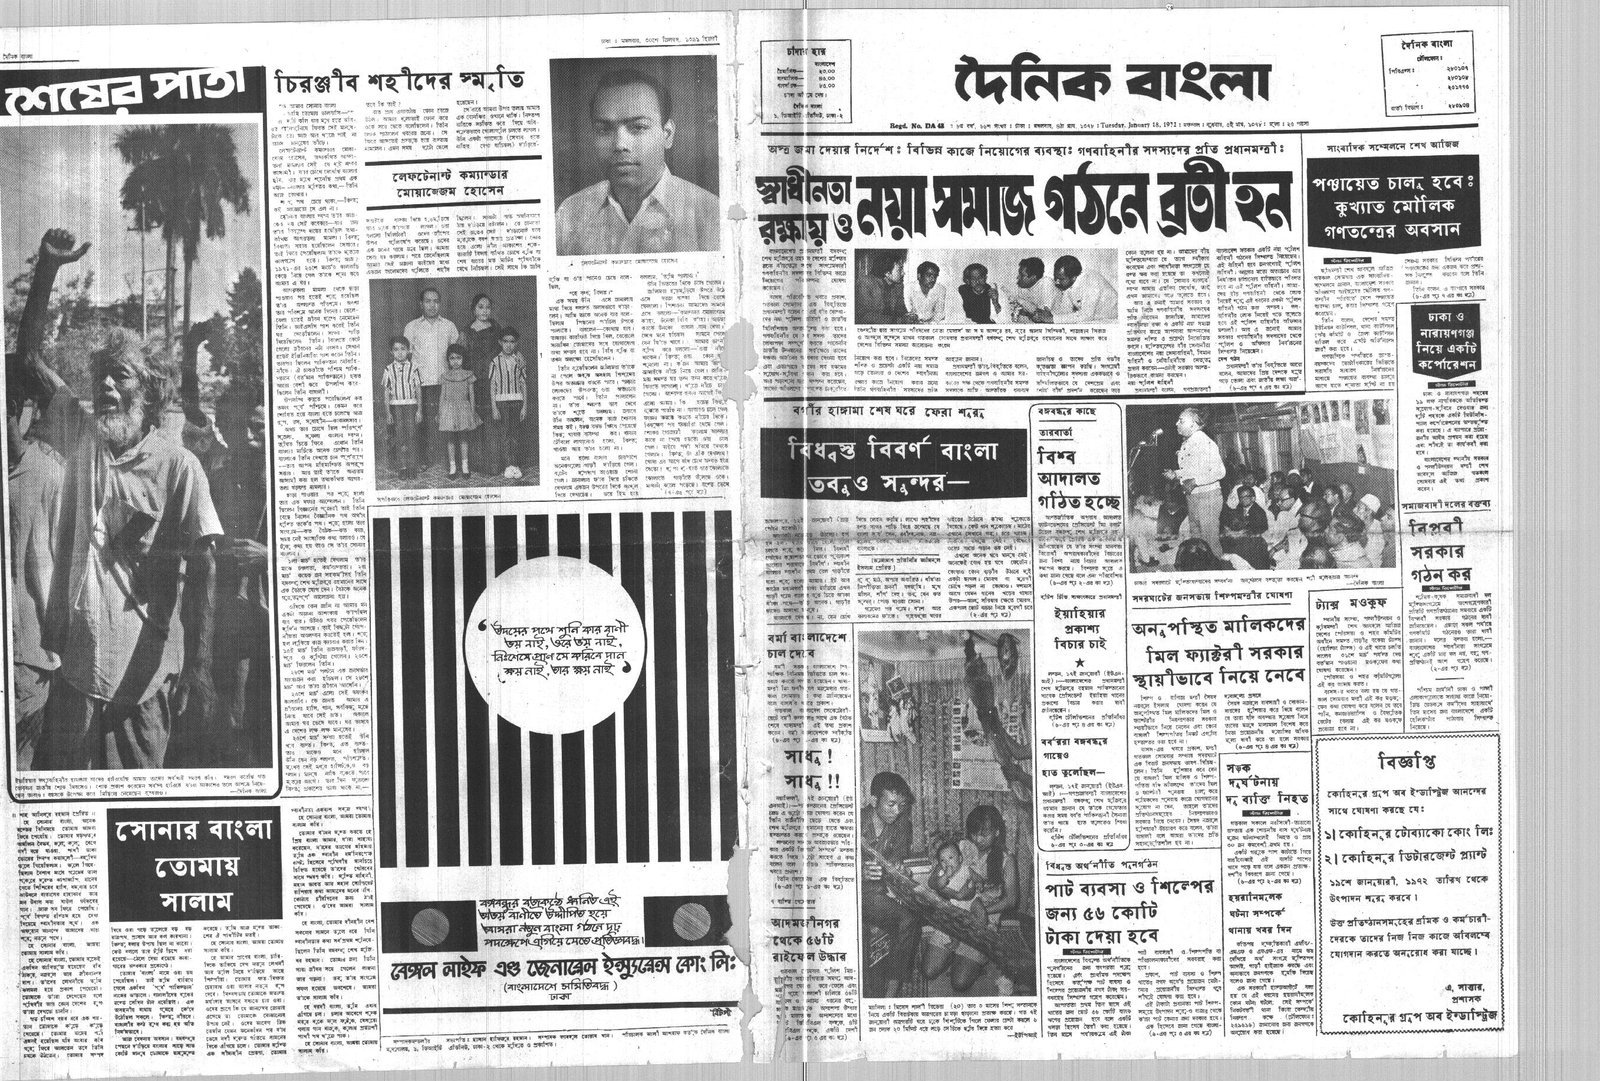 18JAN1972-DAINIK BANGLA-Regular-Page 1 and 8